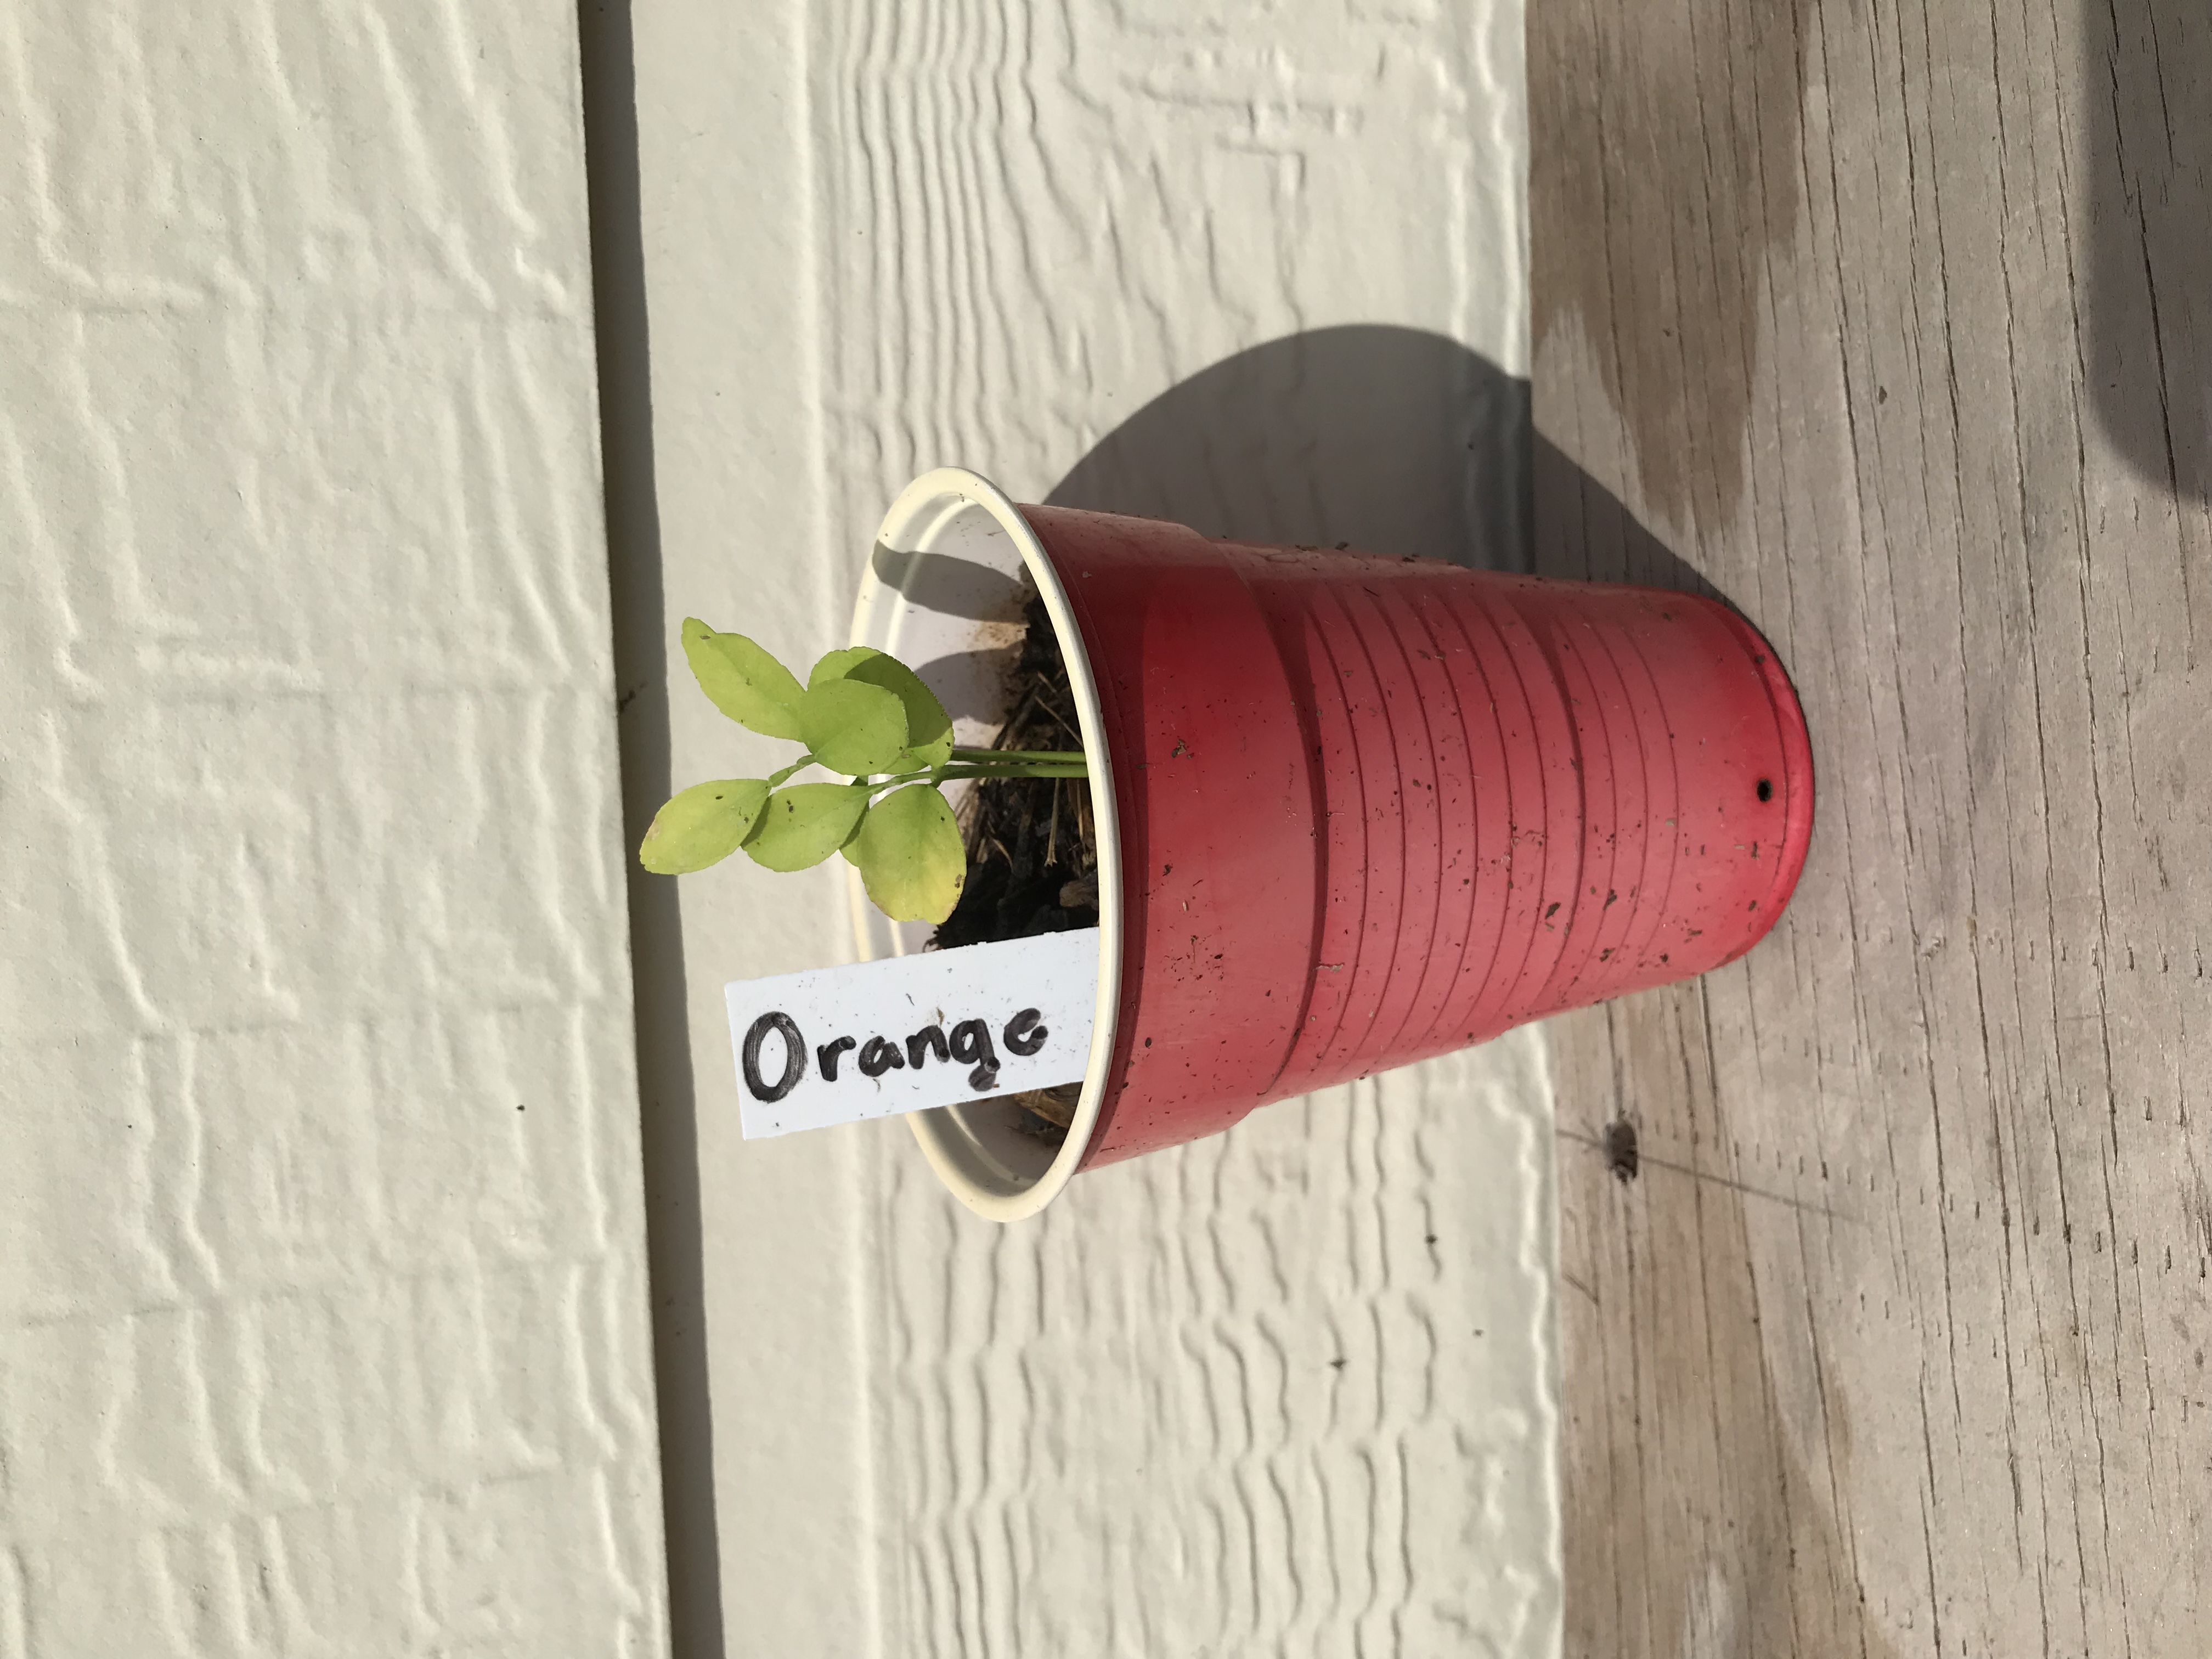 New     2.5” Tall Orange Tree Seedling